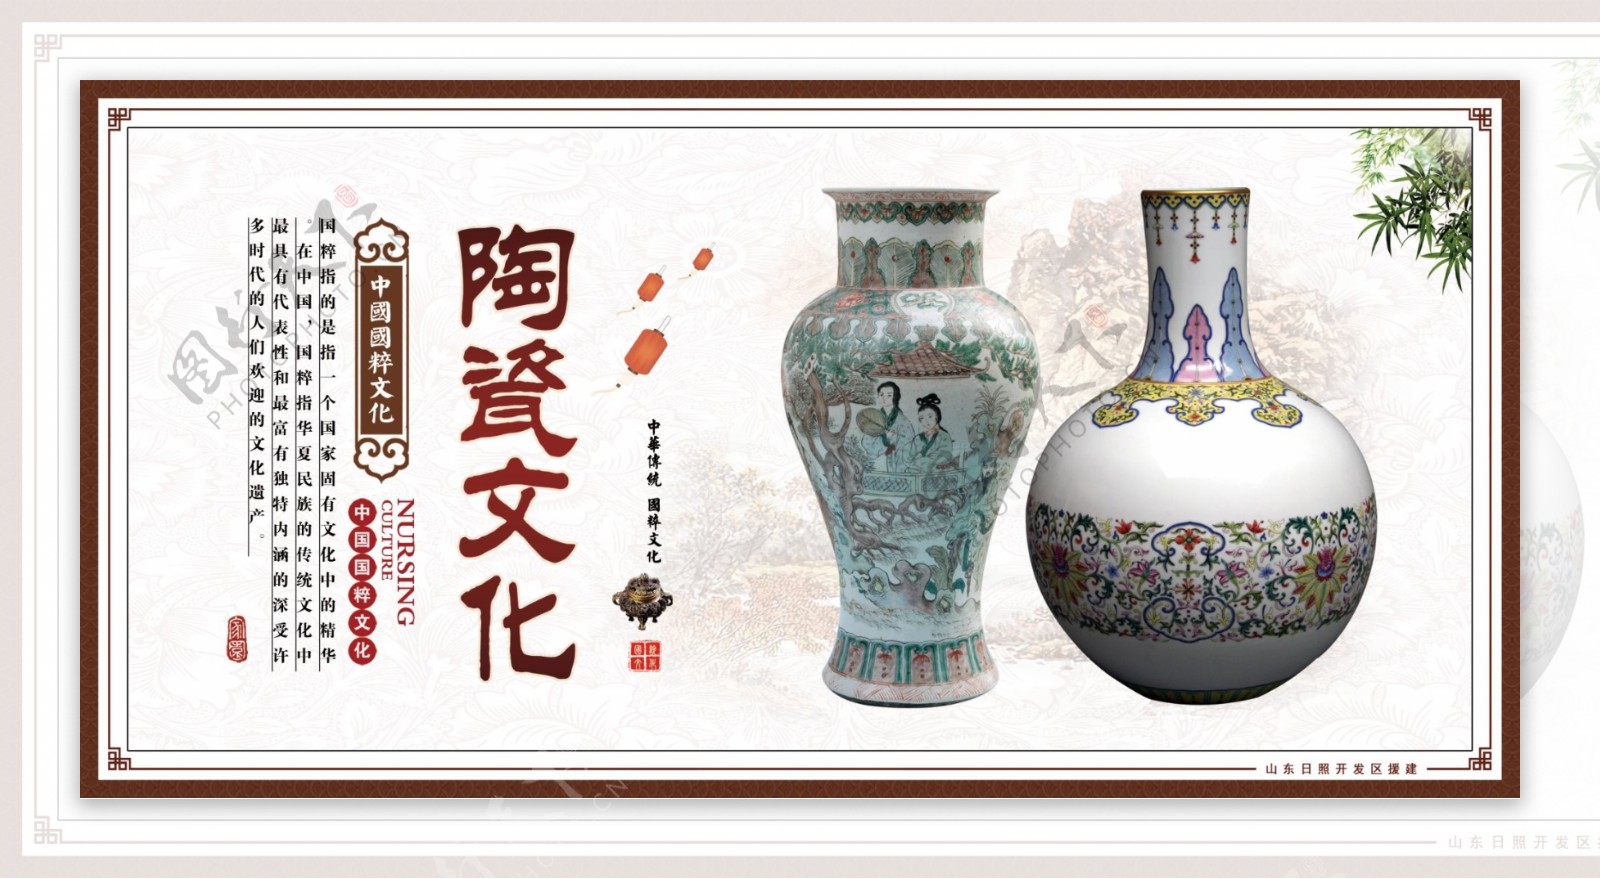 中国陶瓷文化